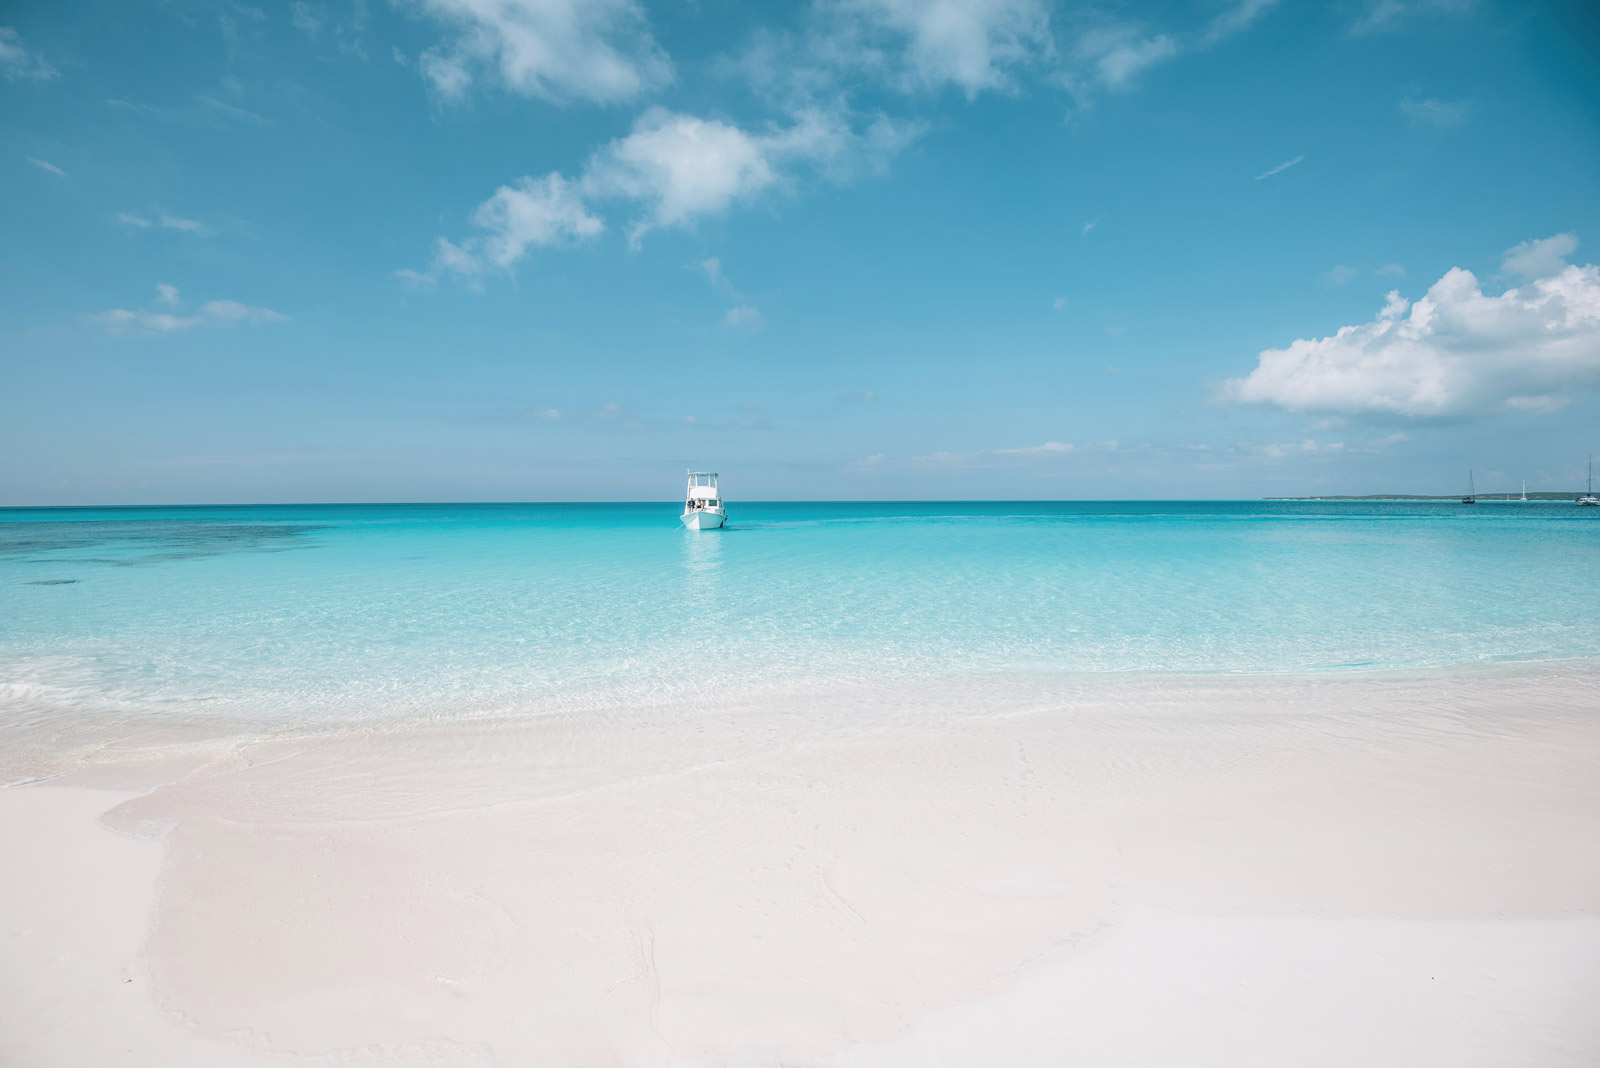 Plage du Cap Santa Maria, une des plus belle du monde, Long Island, Bahamas